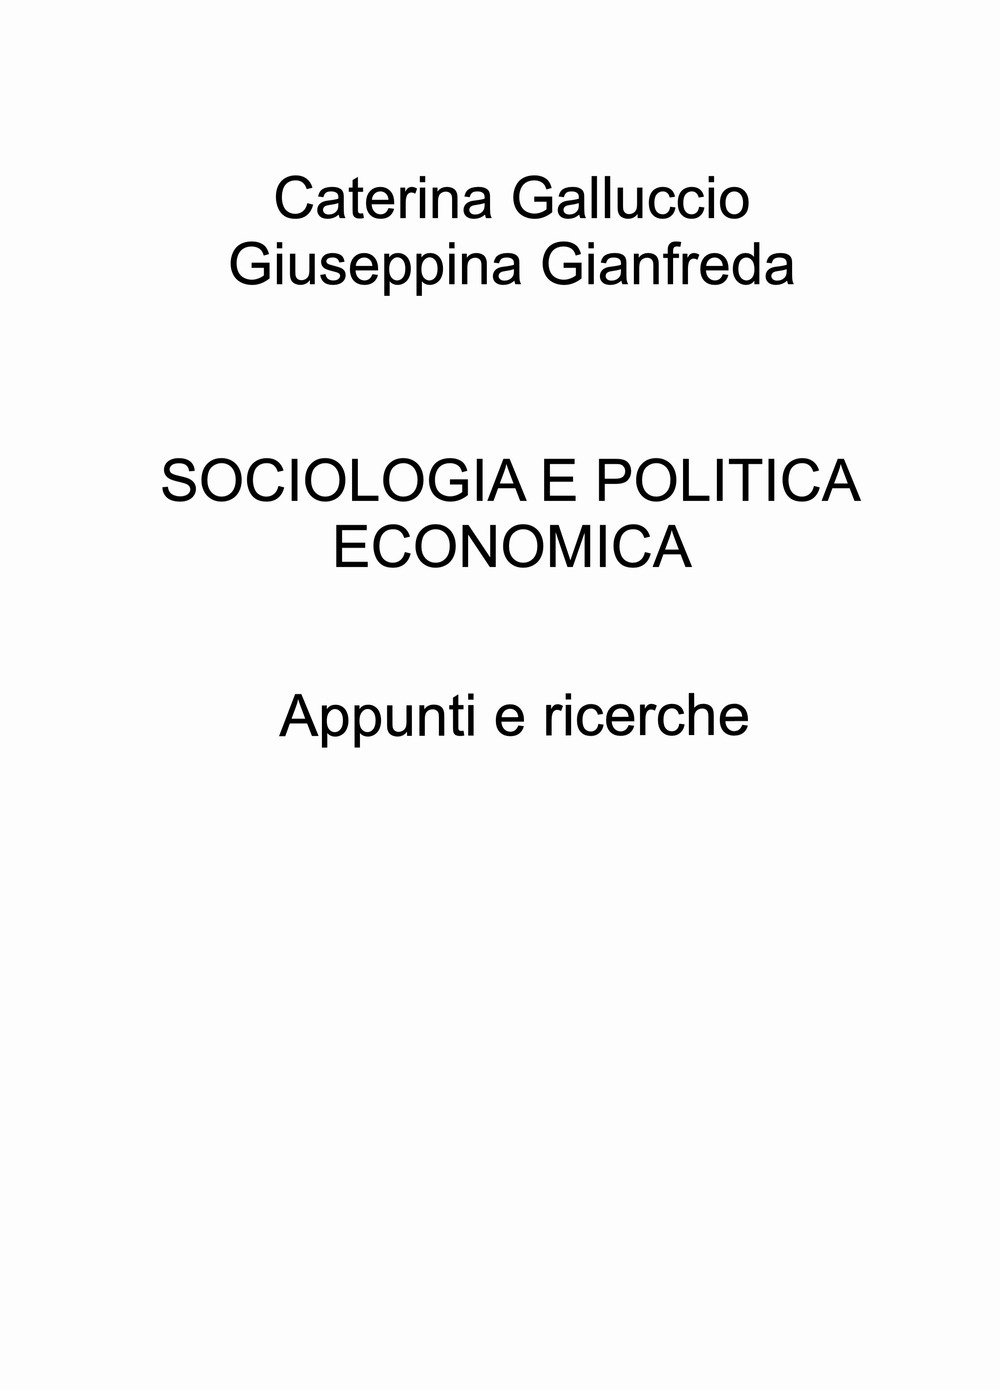 Sociologia e politica economica. Appunti e ricerche